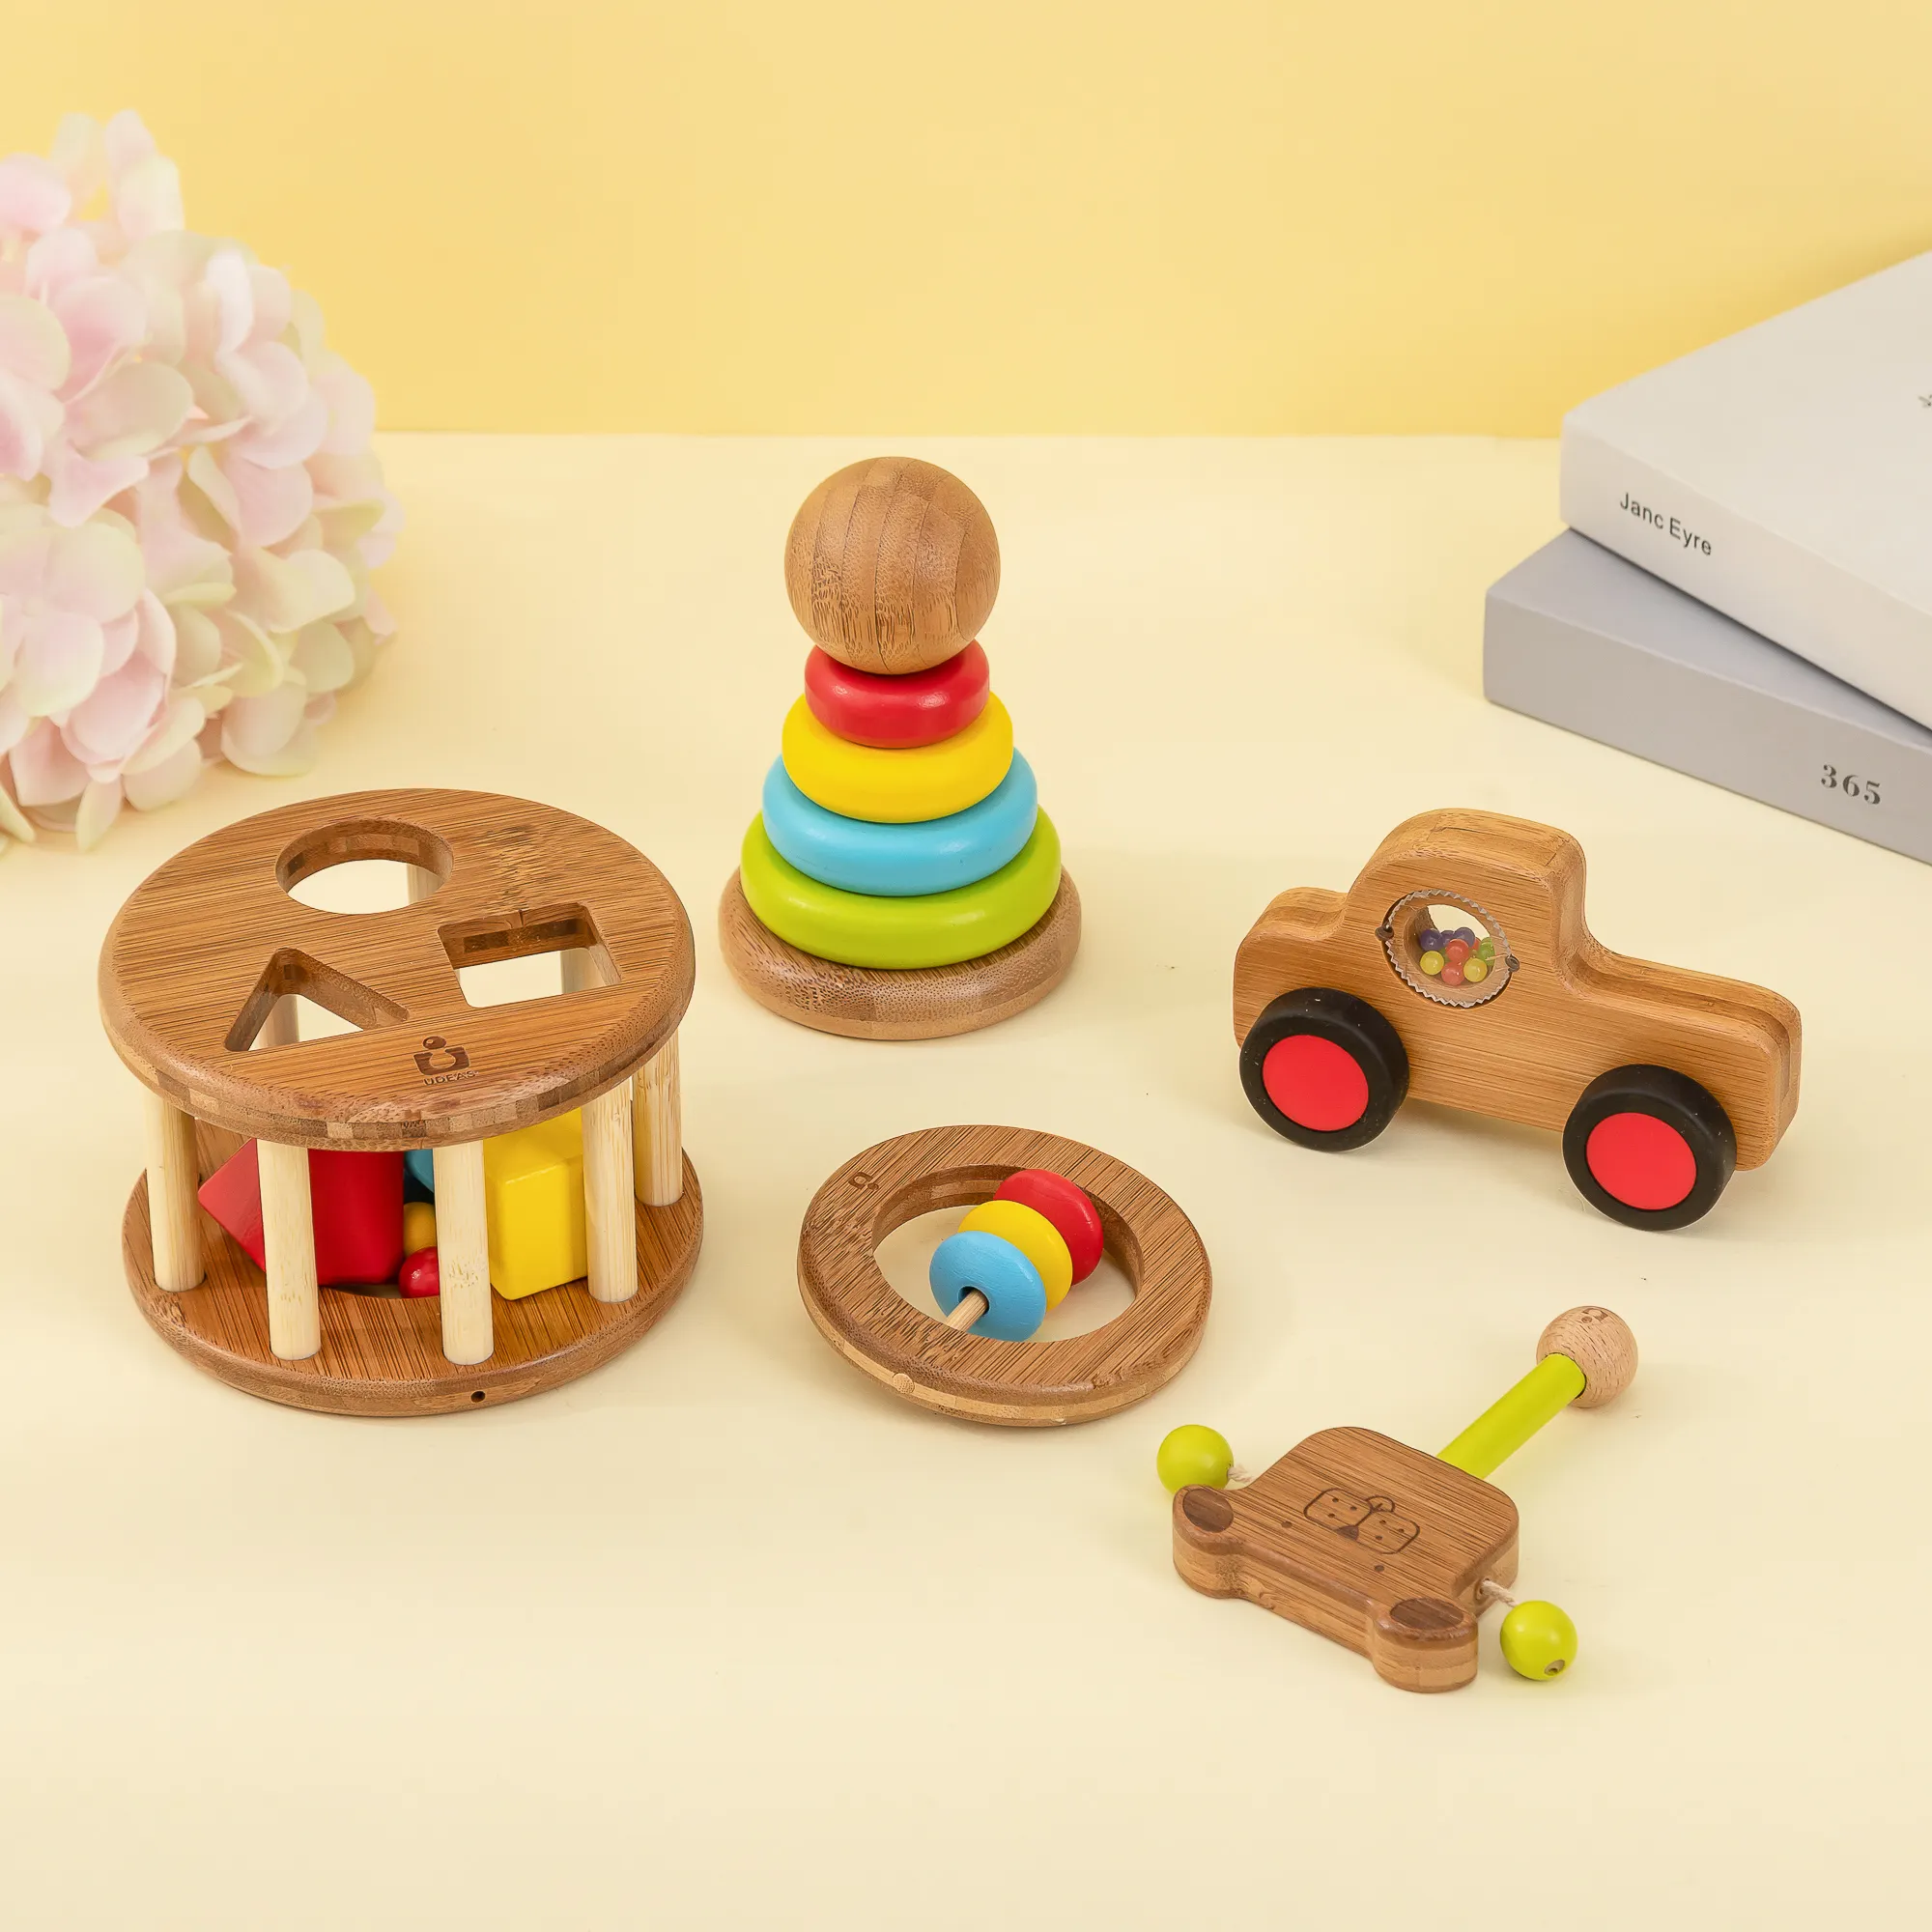 UDEAS 2 3 ans bébé jouet en bambou enfant puzzle jeu trieurs jouets éducatifs en bois